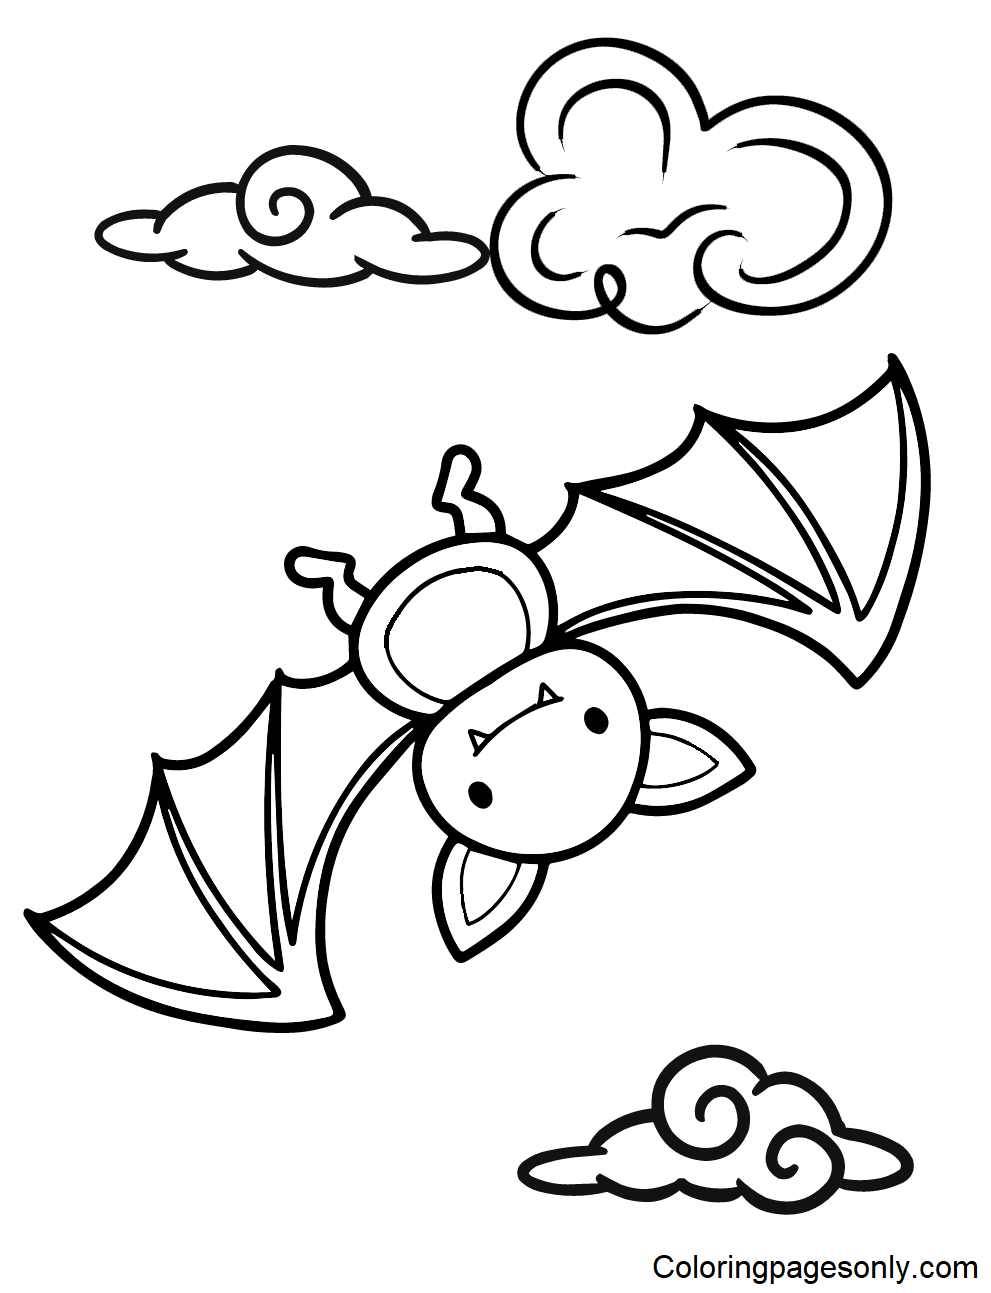 Bat color Sheets Coloring Pages